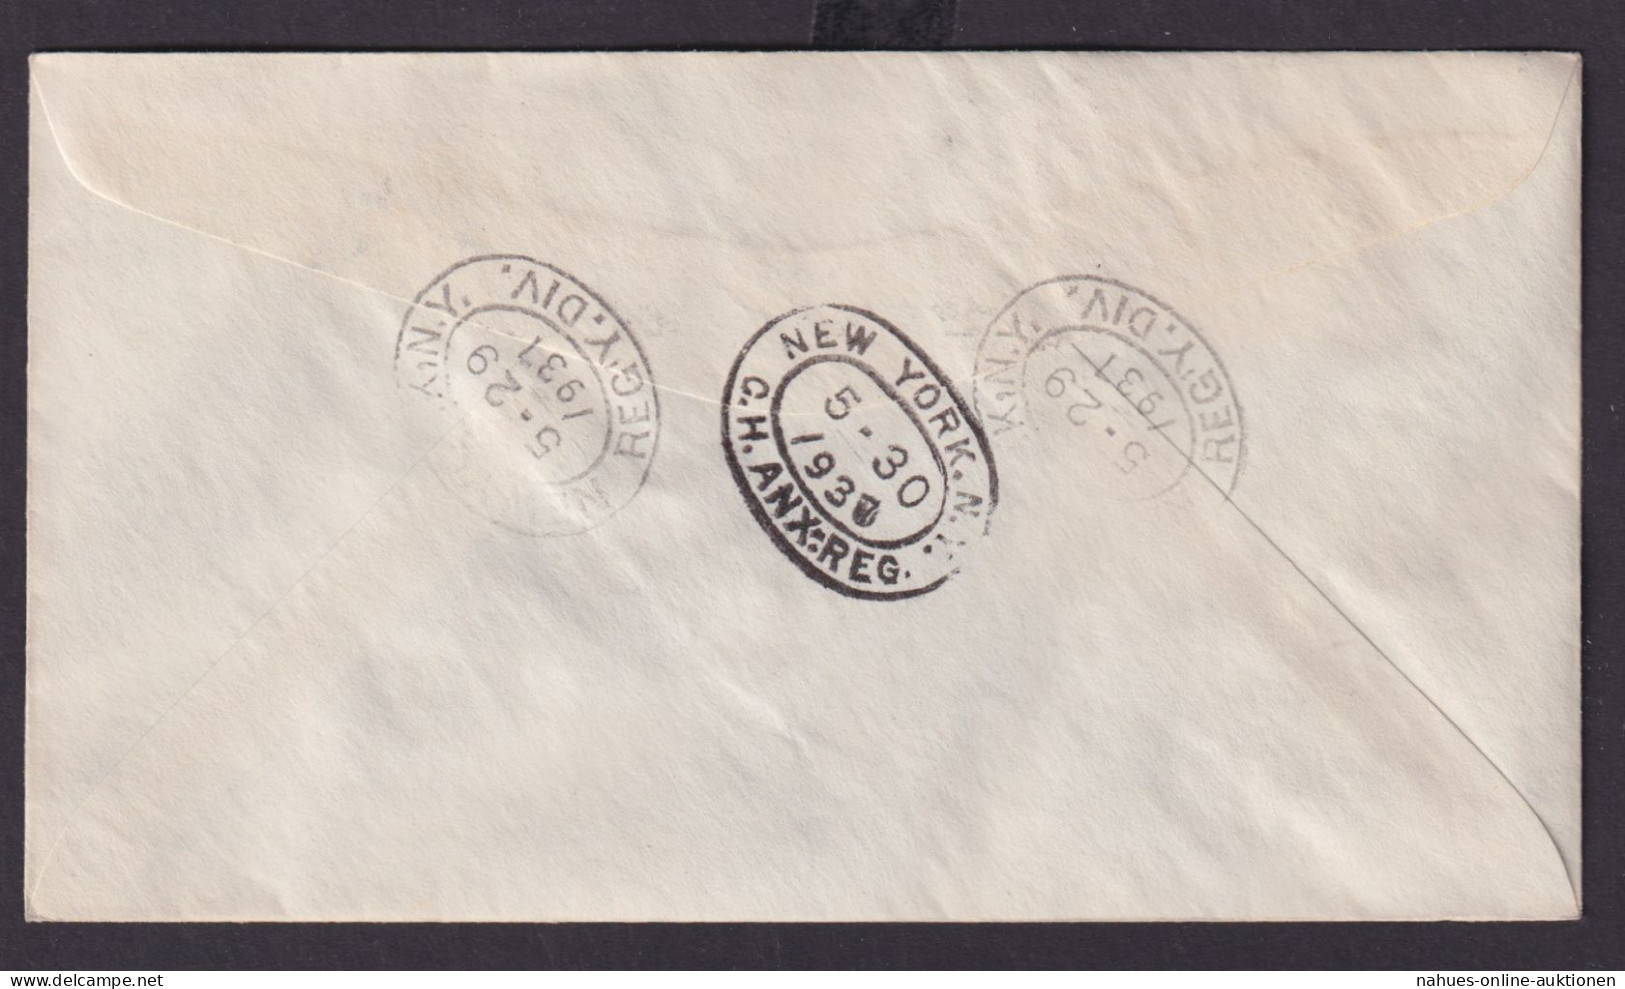 Briefmarken Britische Kolonien British Honduras König Georg Elisabeth Krönung - Honduras